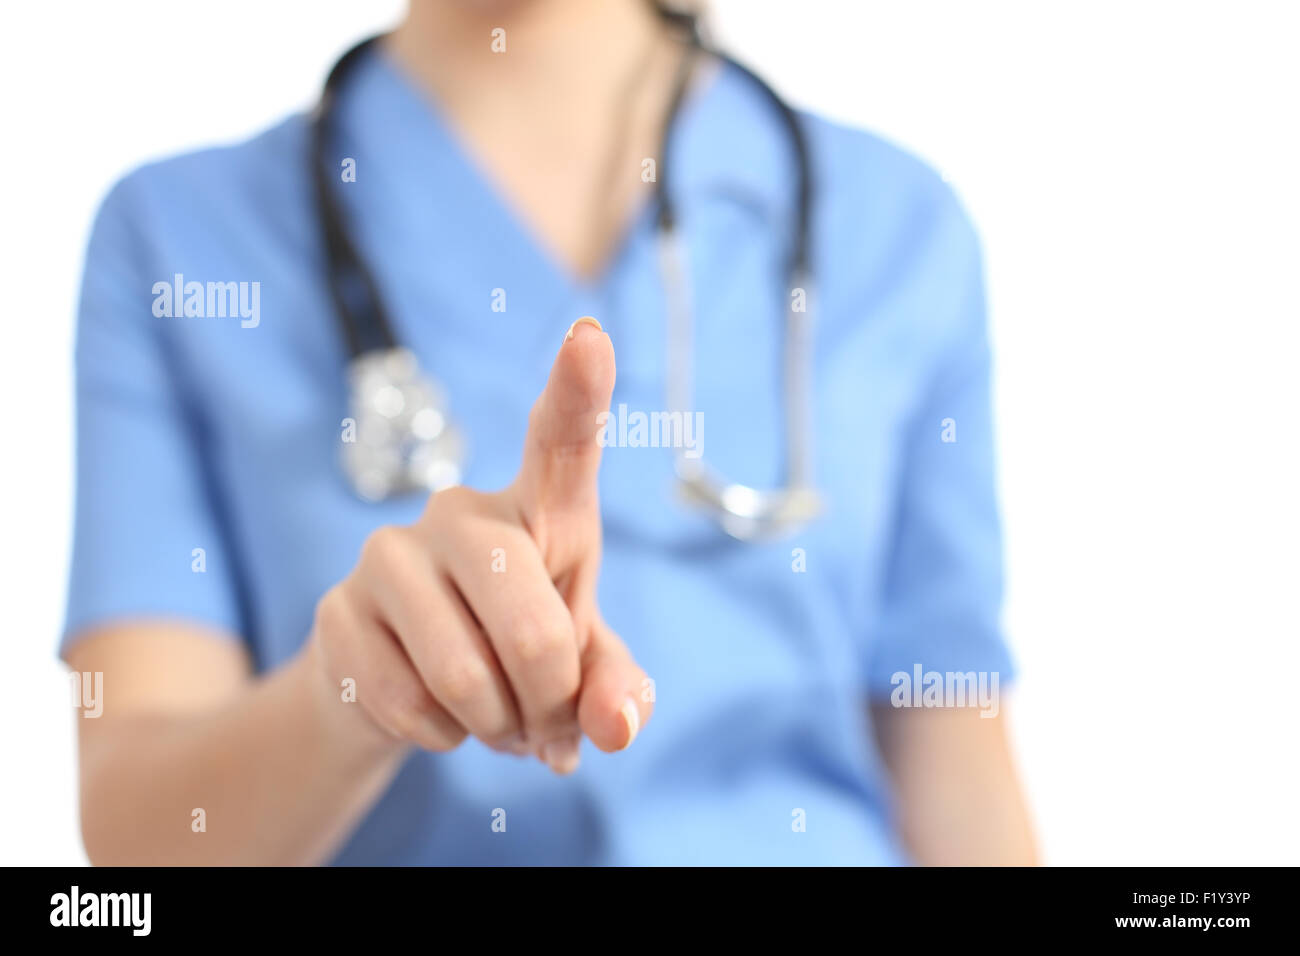 Enfermera o médico seleccionar algo en blanco con el dedo a la cámara aislado sobre un fondo blanco. Foto de stock